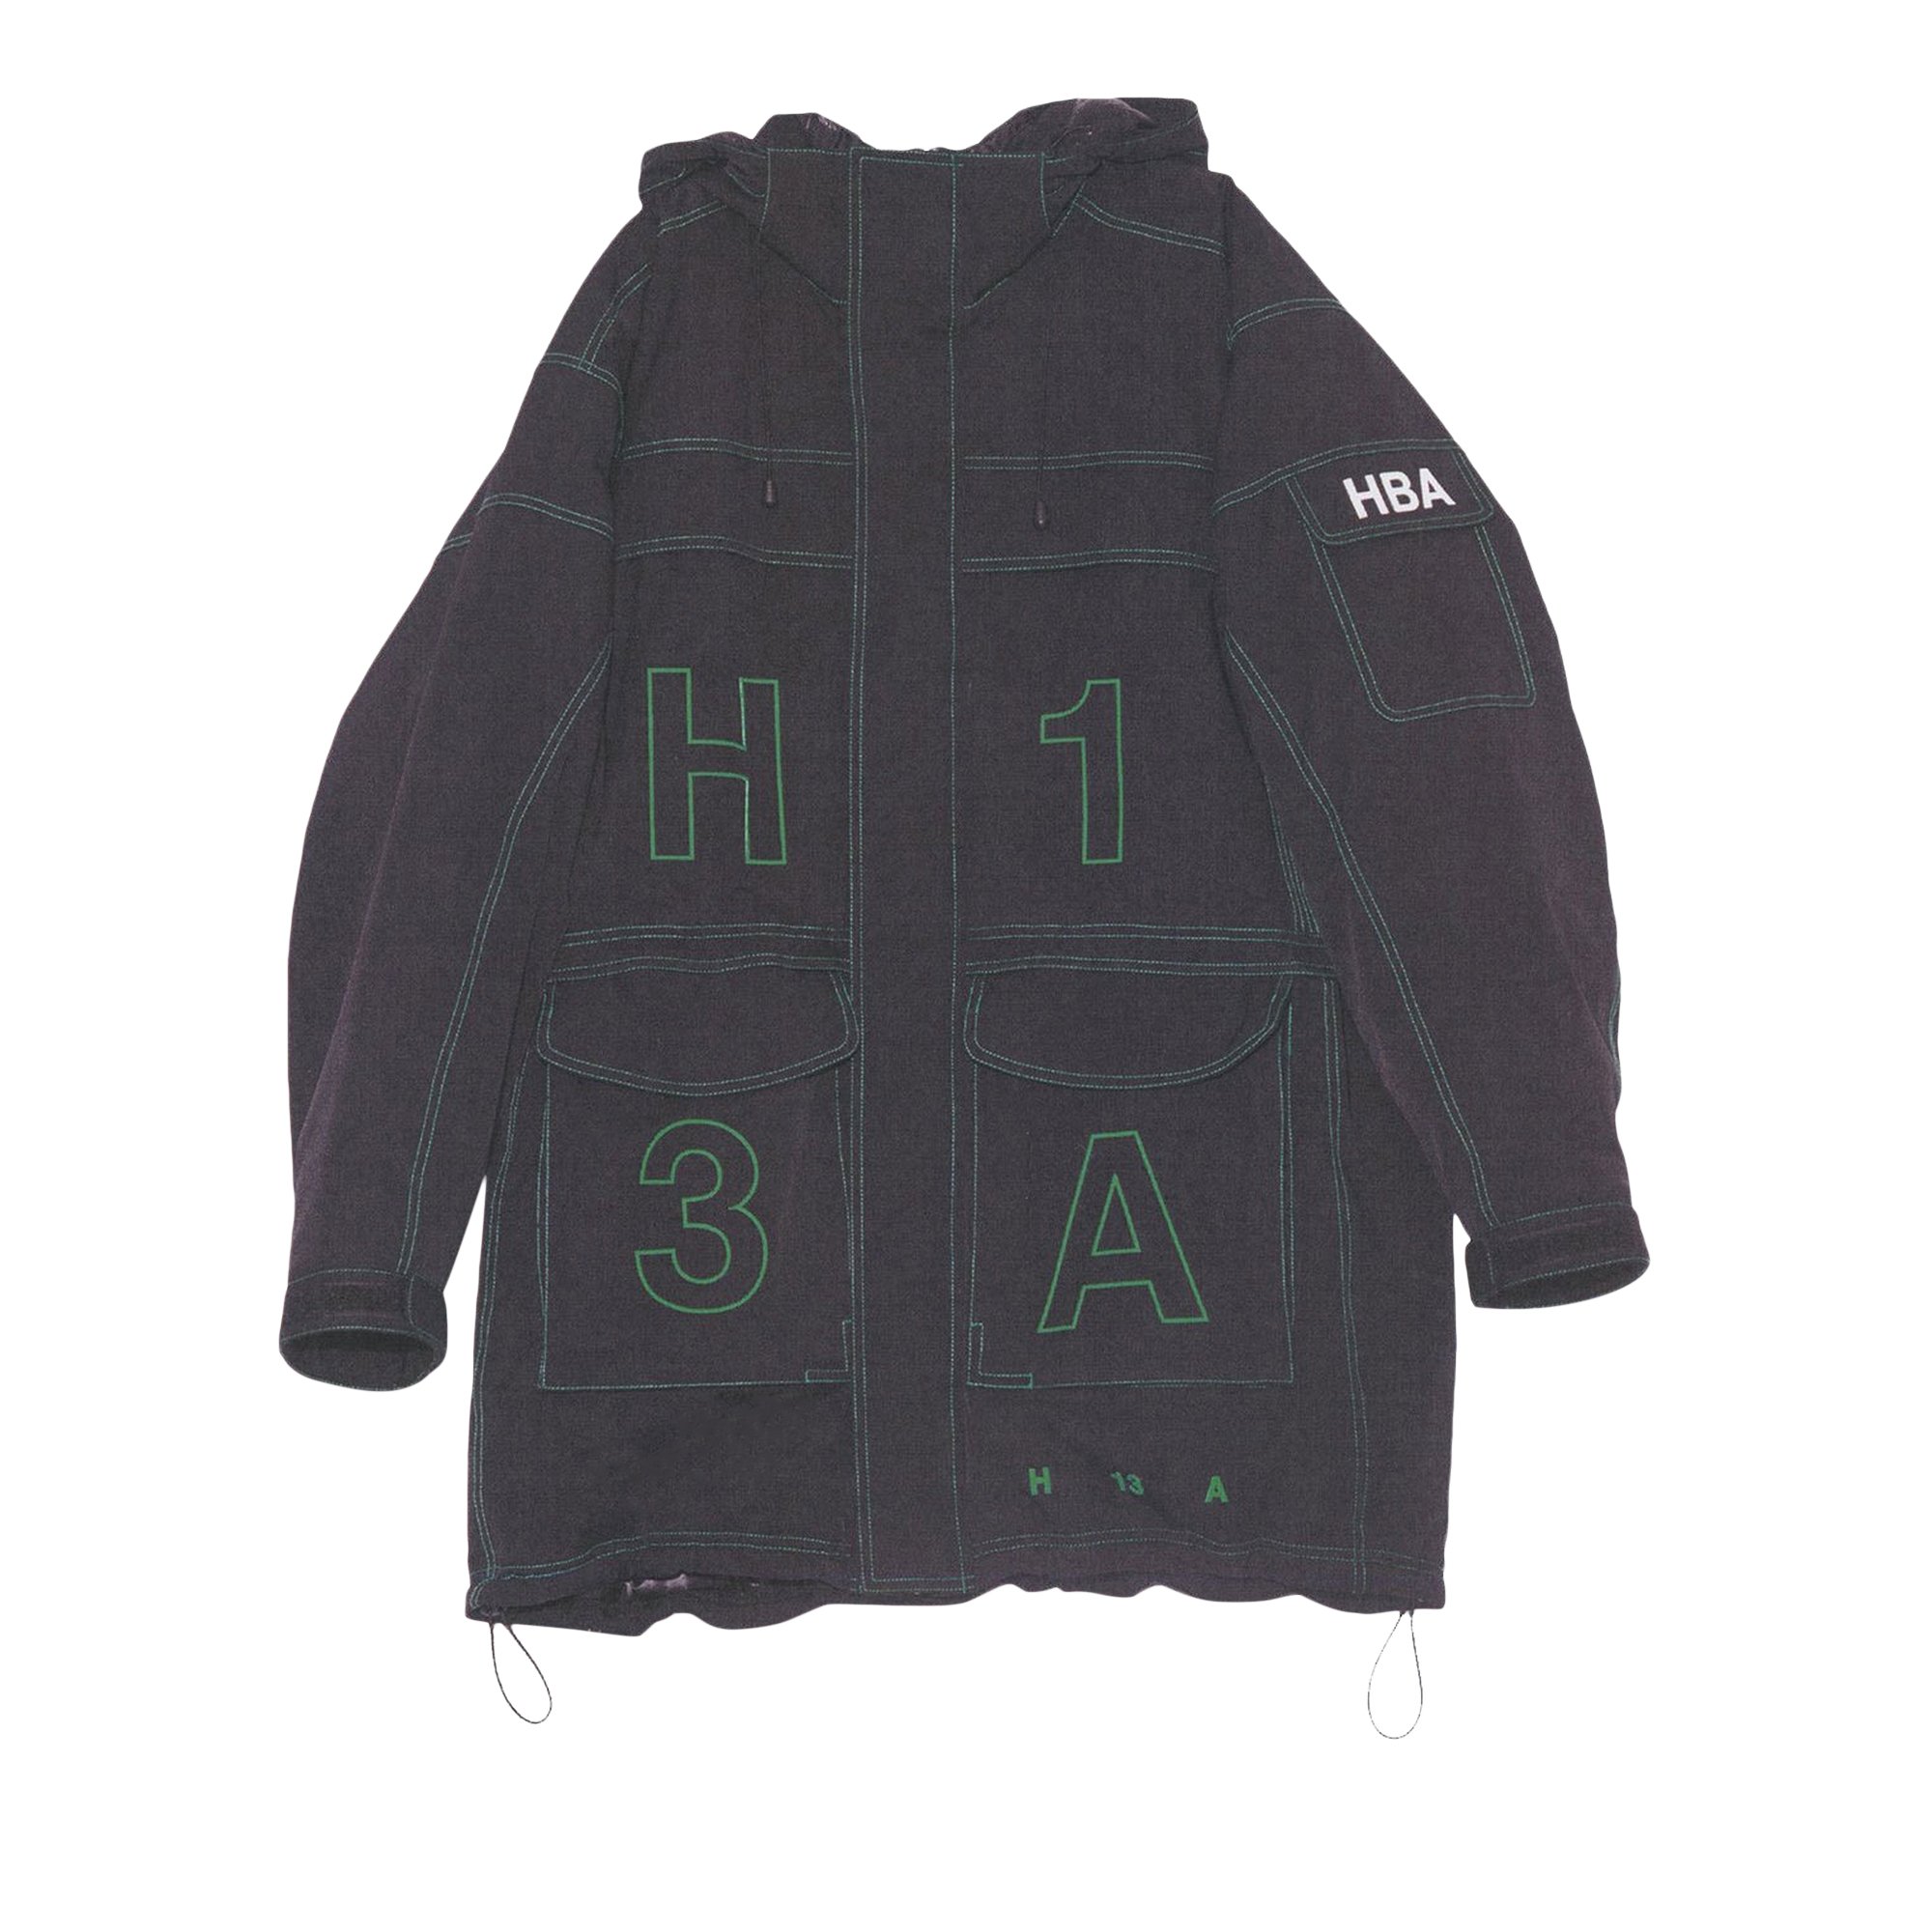 Buy Hood By Air Down Jacket 'Black' - HBA 129 01 000 | GOAT